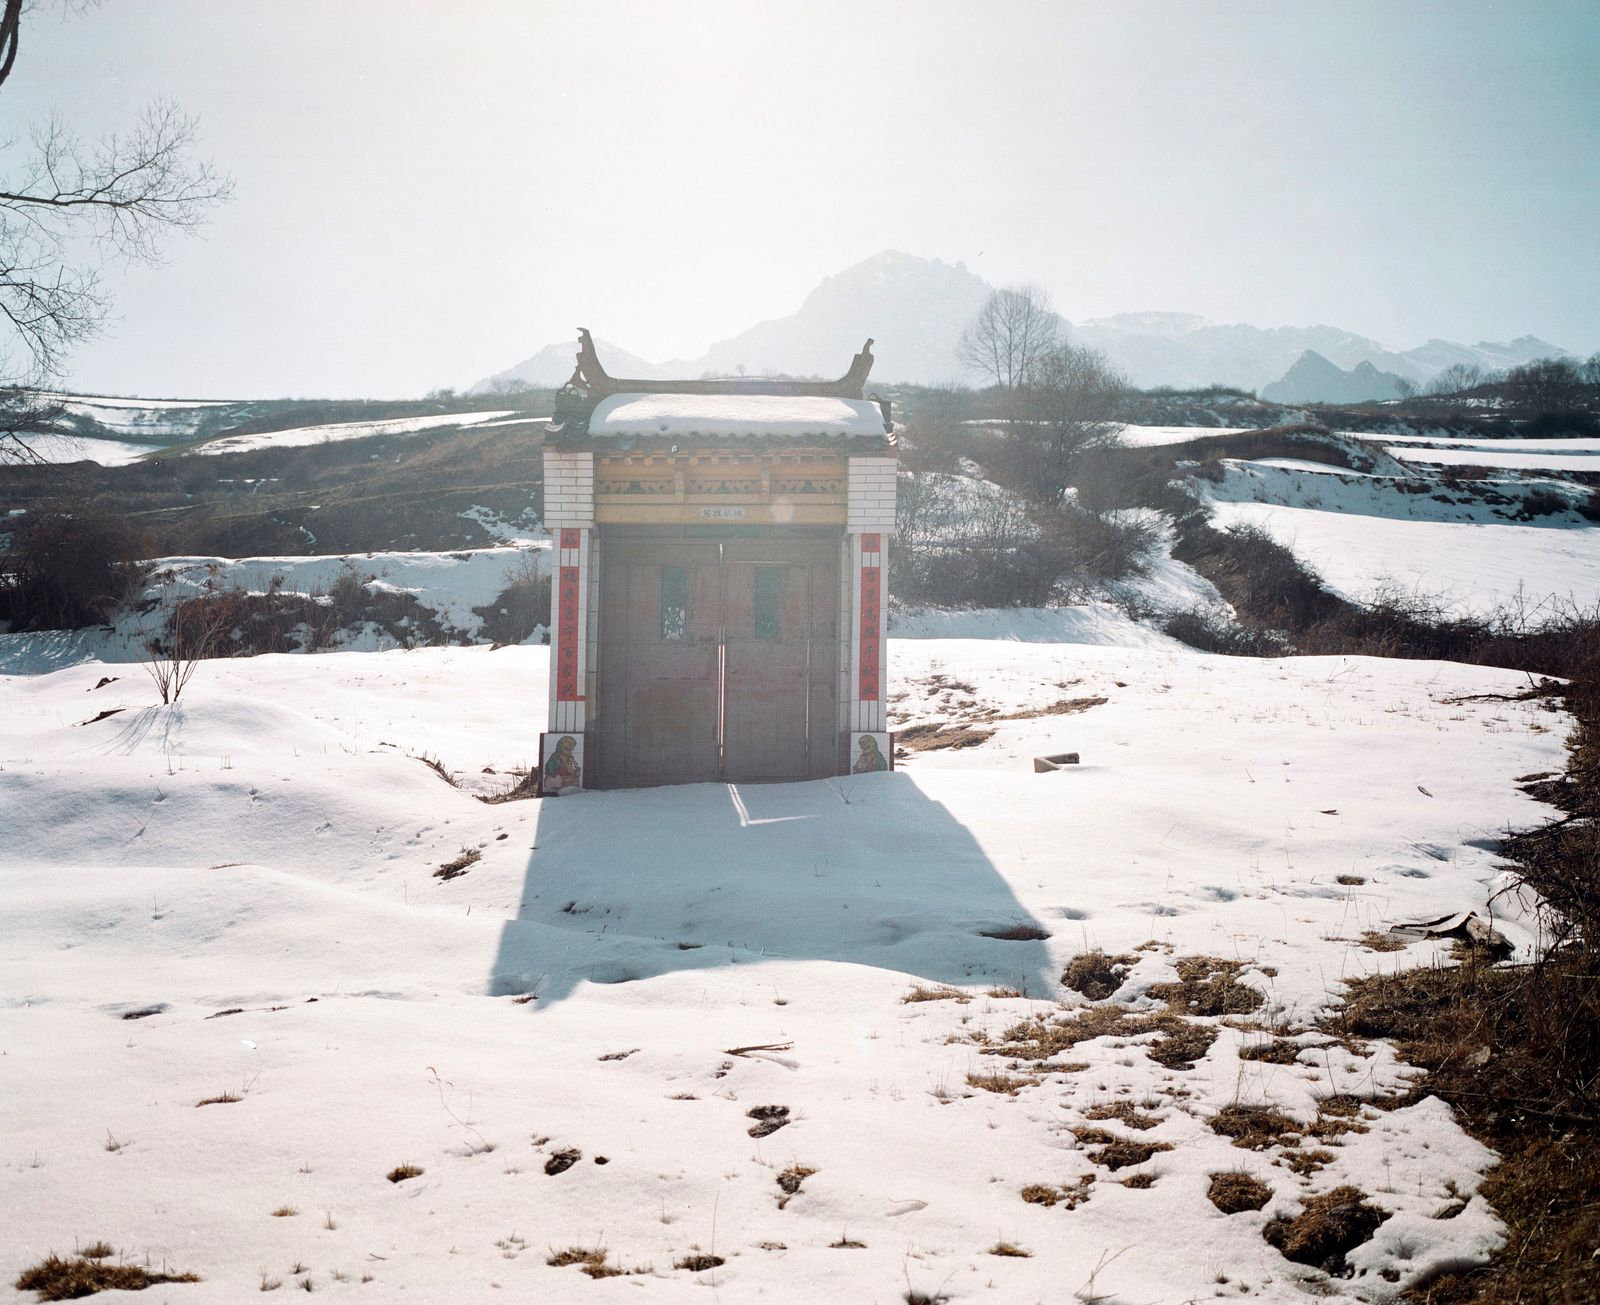 © Pan Wang - Gatehouse on Baishi mountain, Lintan County, Gansu Province, China